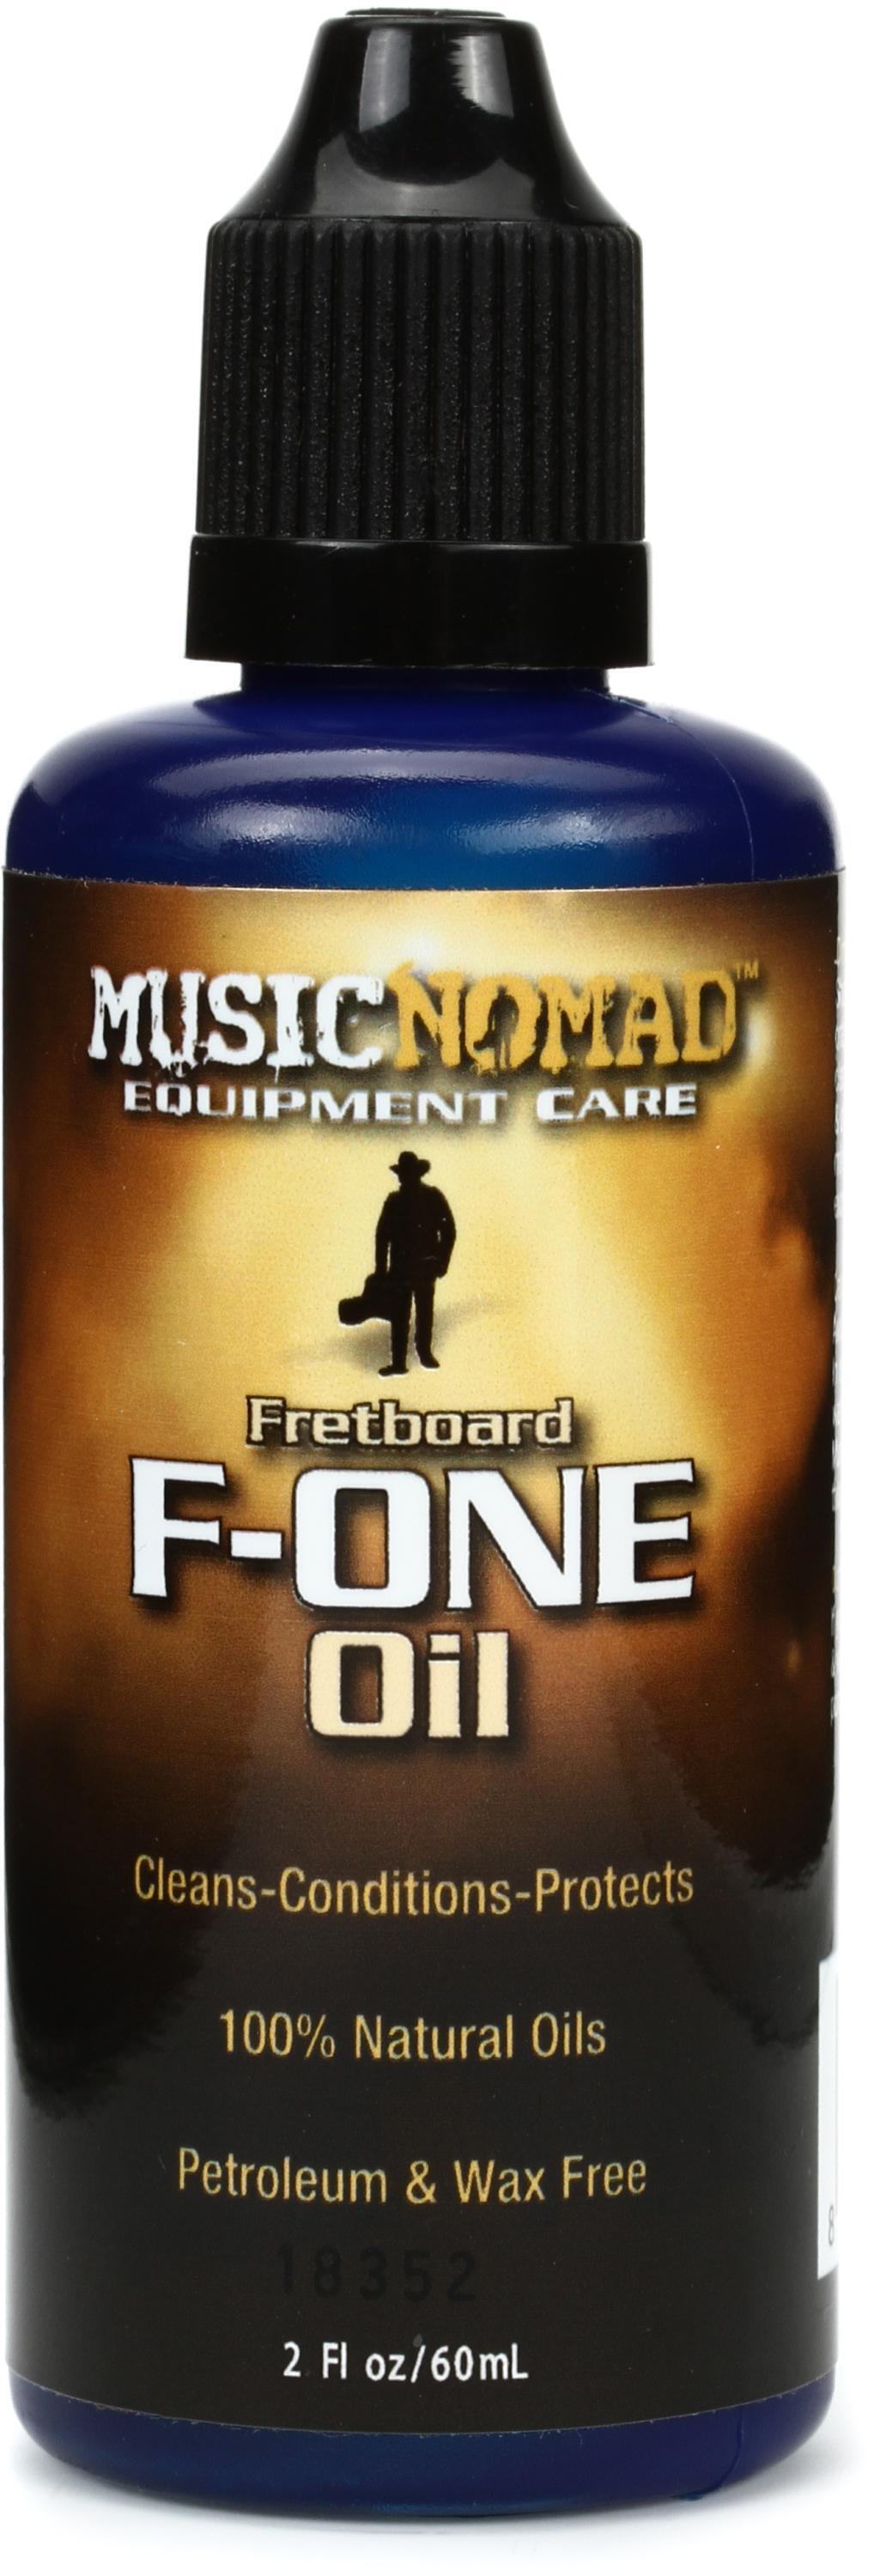 Fretboard Oil Comparison and Test 